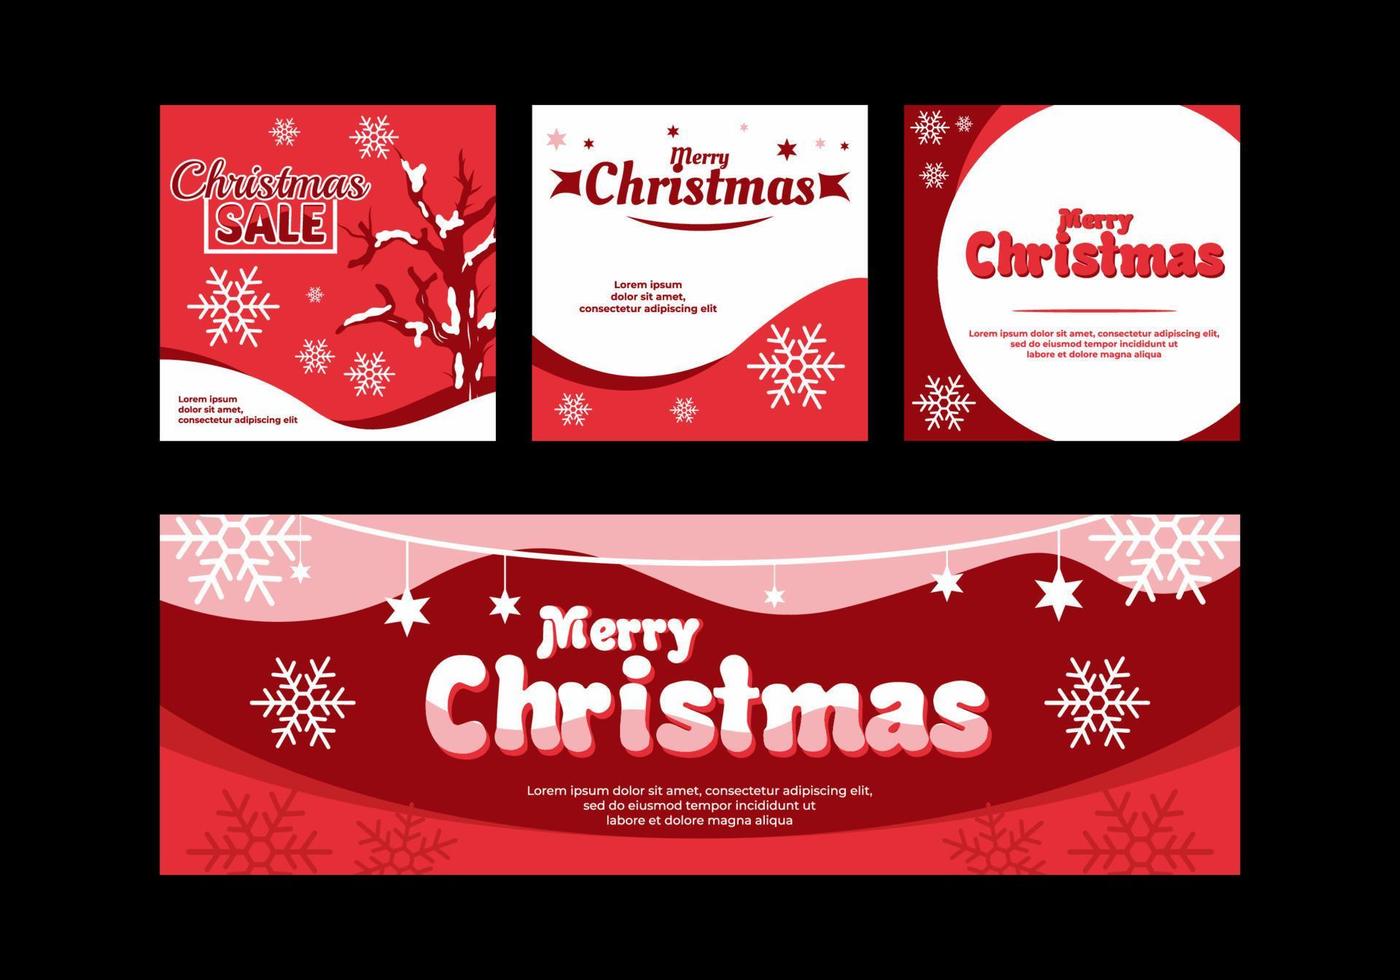 banner de redes sociales de navidad y diseño de anuncios en color rojo vector